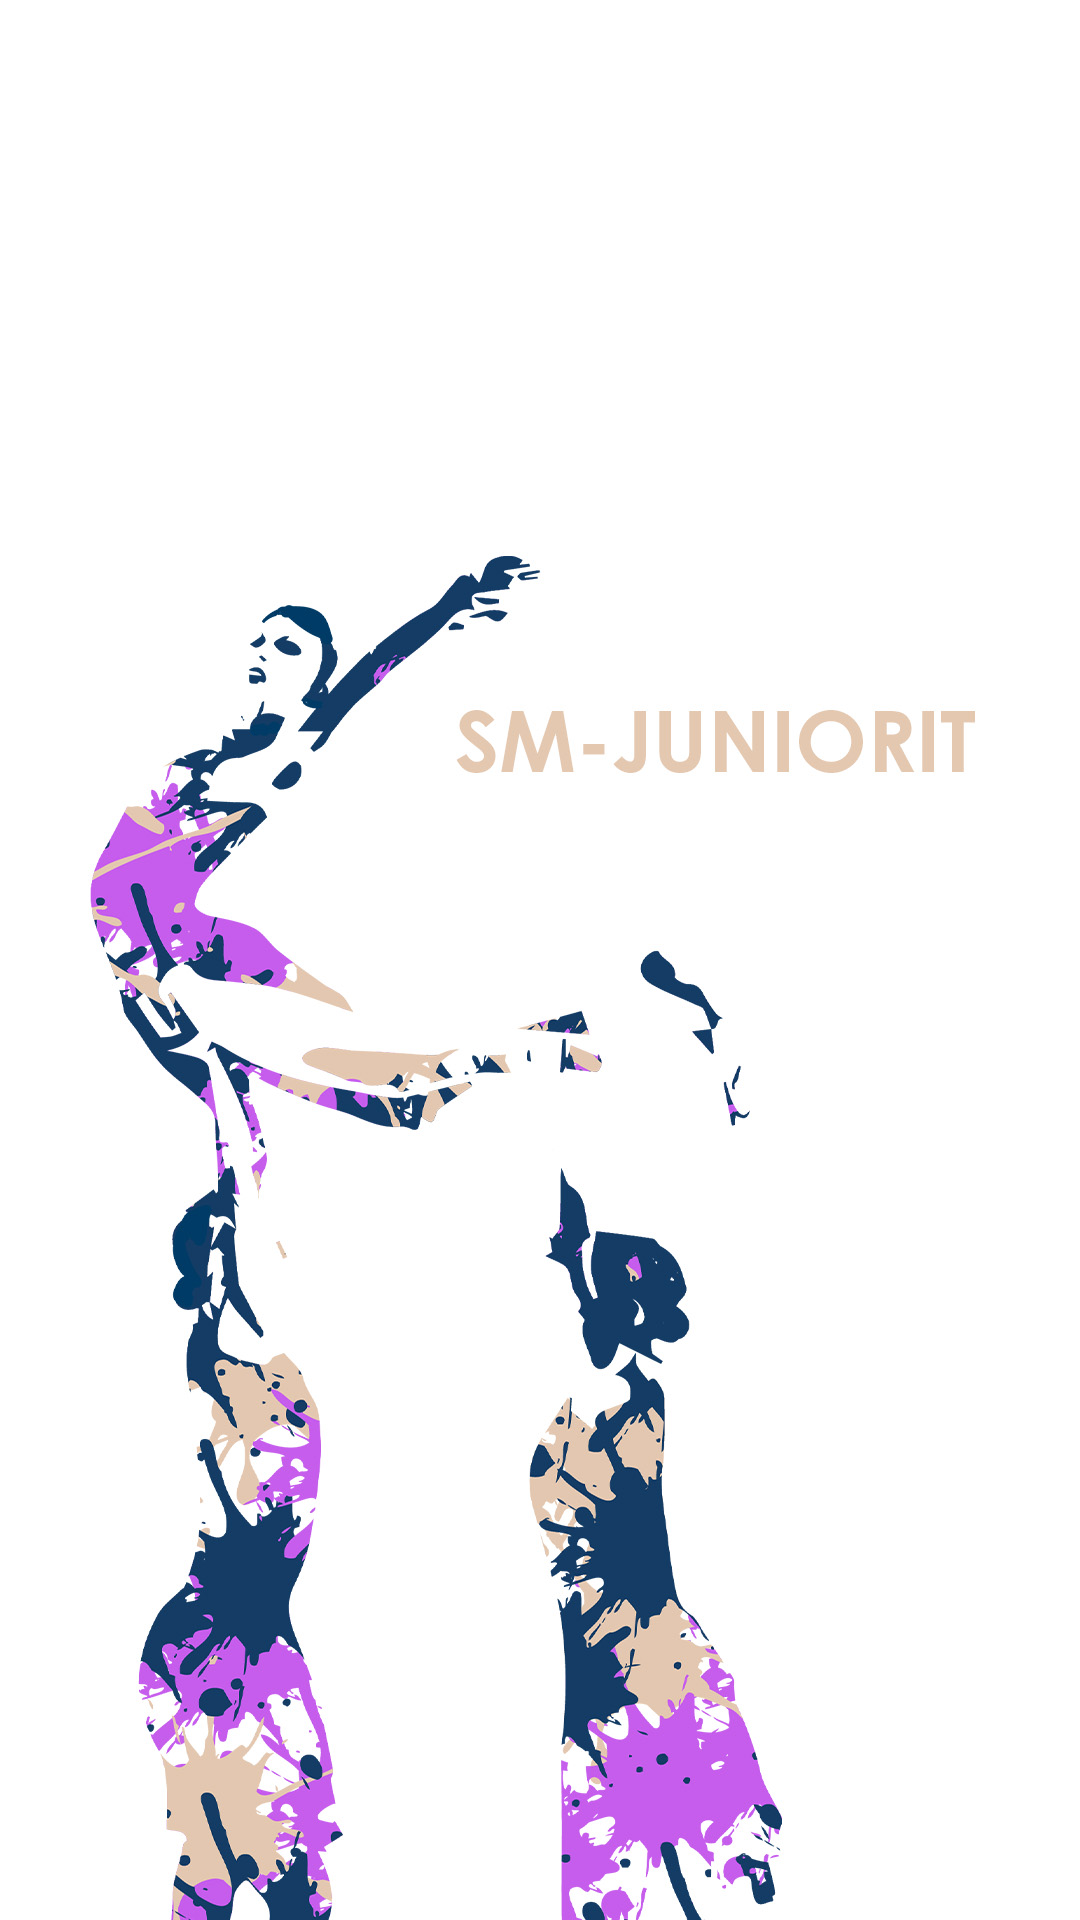 SM-Juniorit